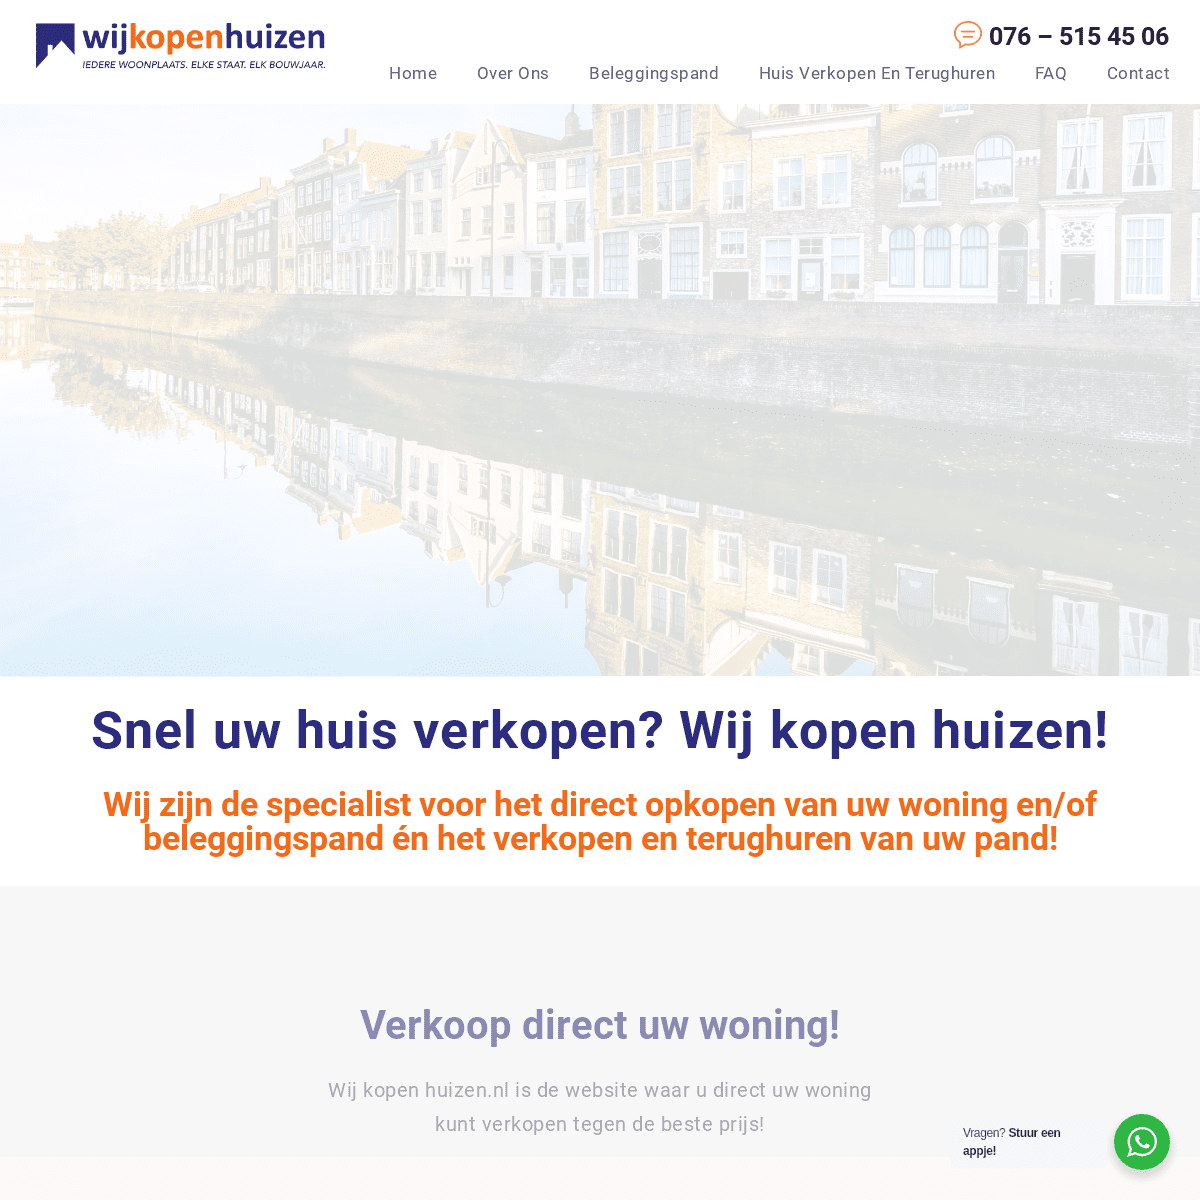 A complete backup of https://wijkopenhuizen.nl